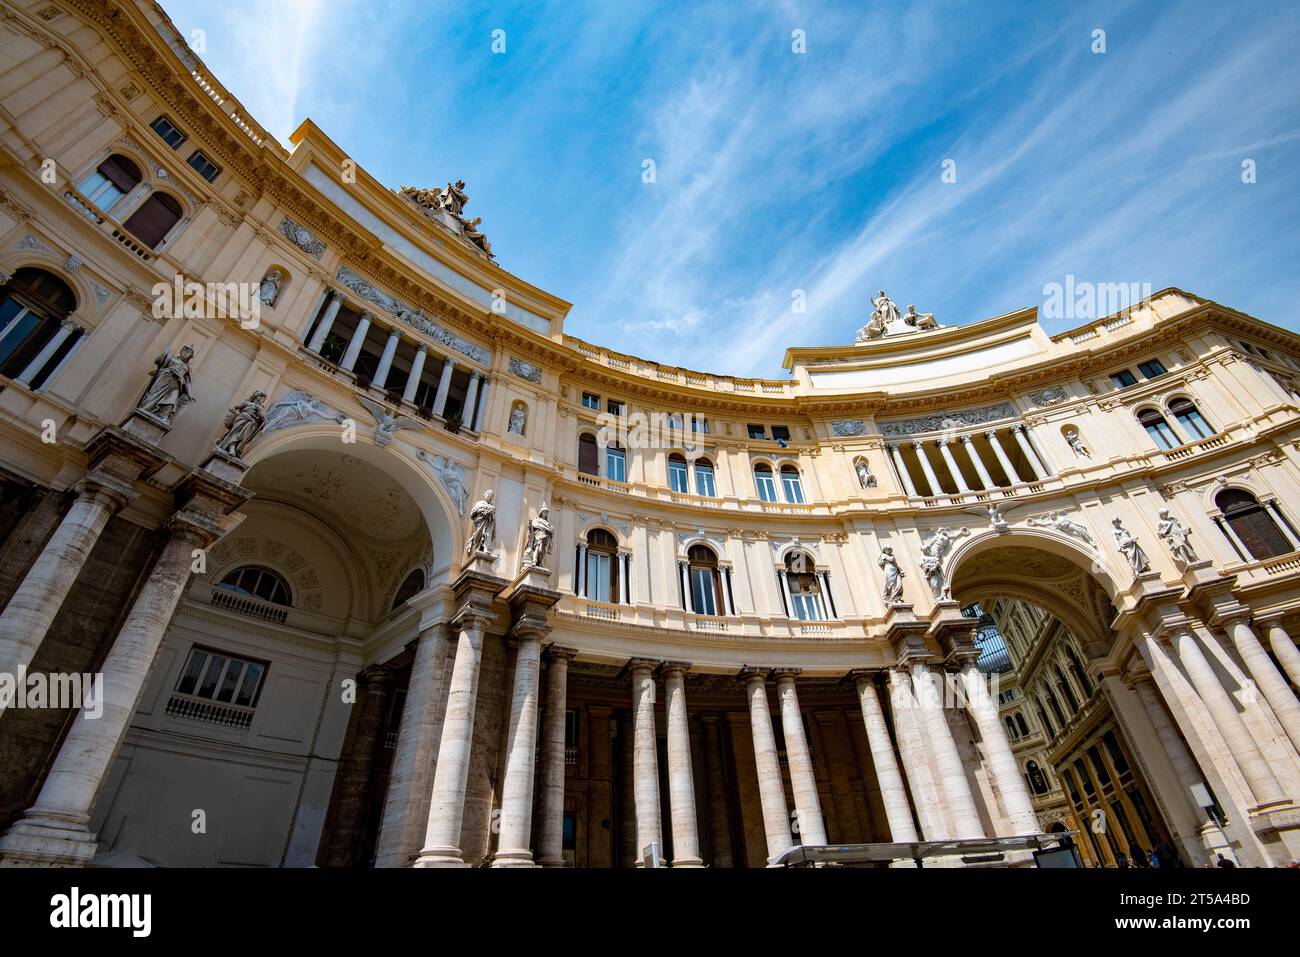 Galleria Umberto I - Naples - Italie Banque D'Images